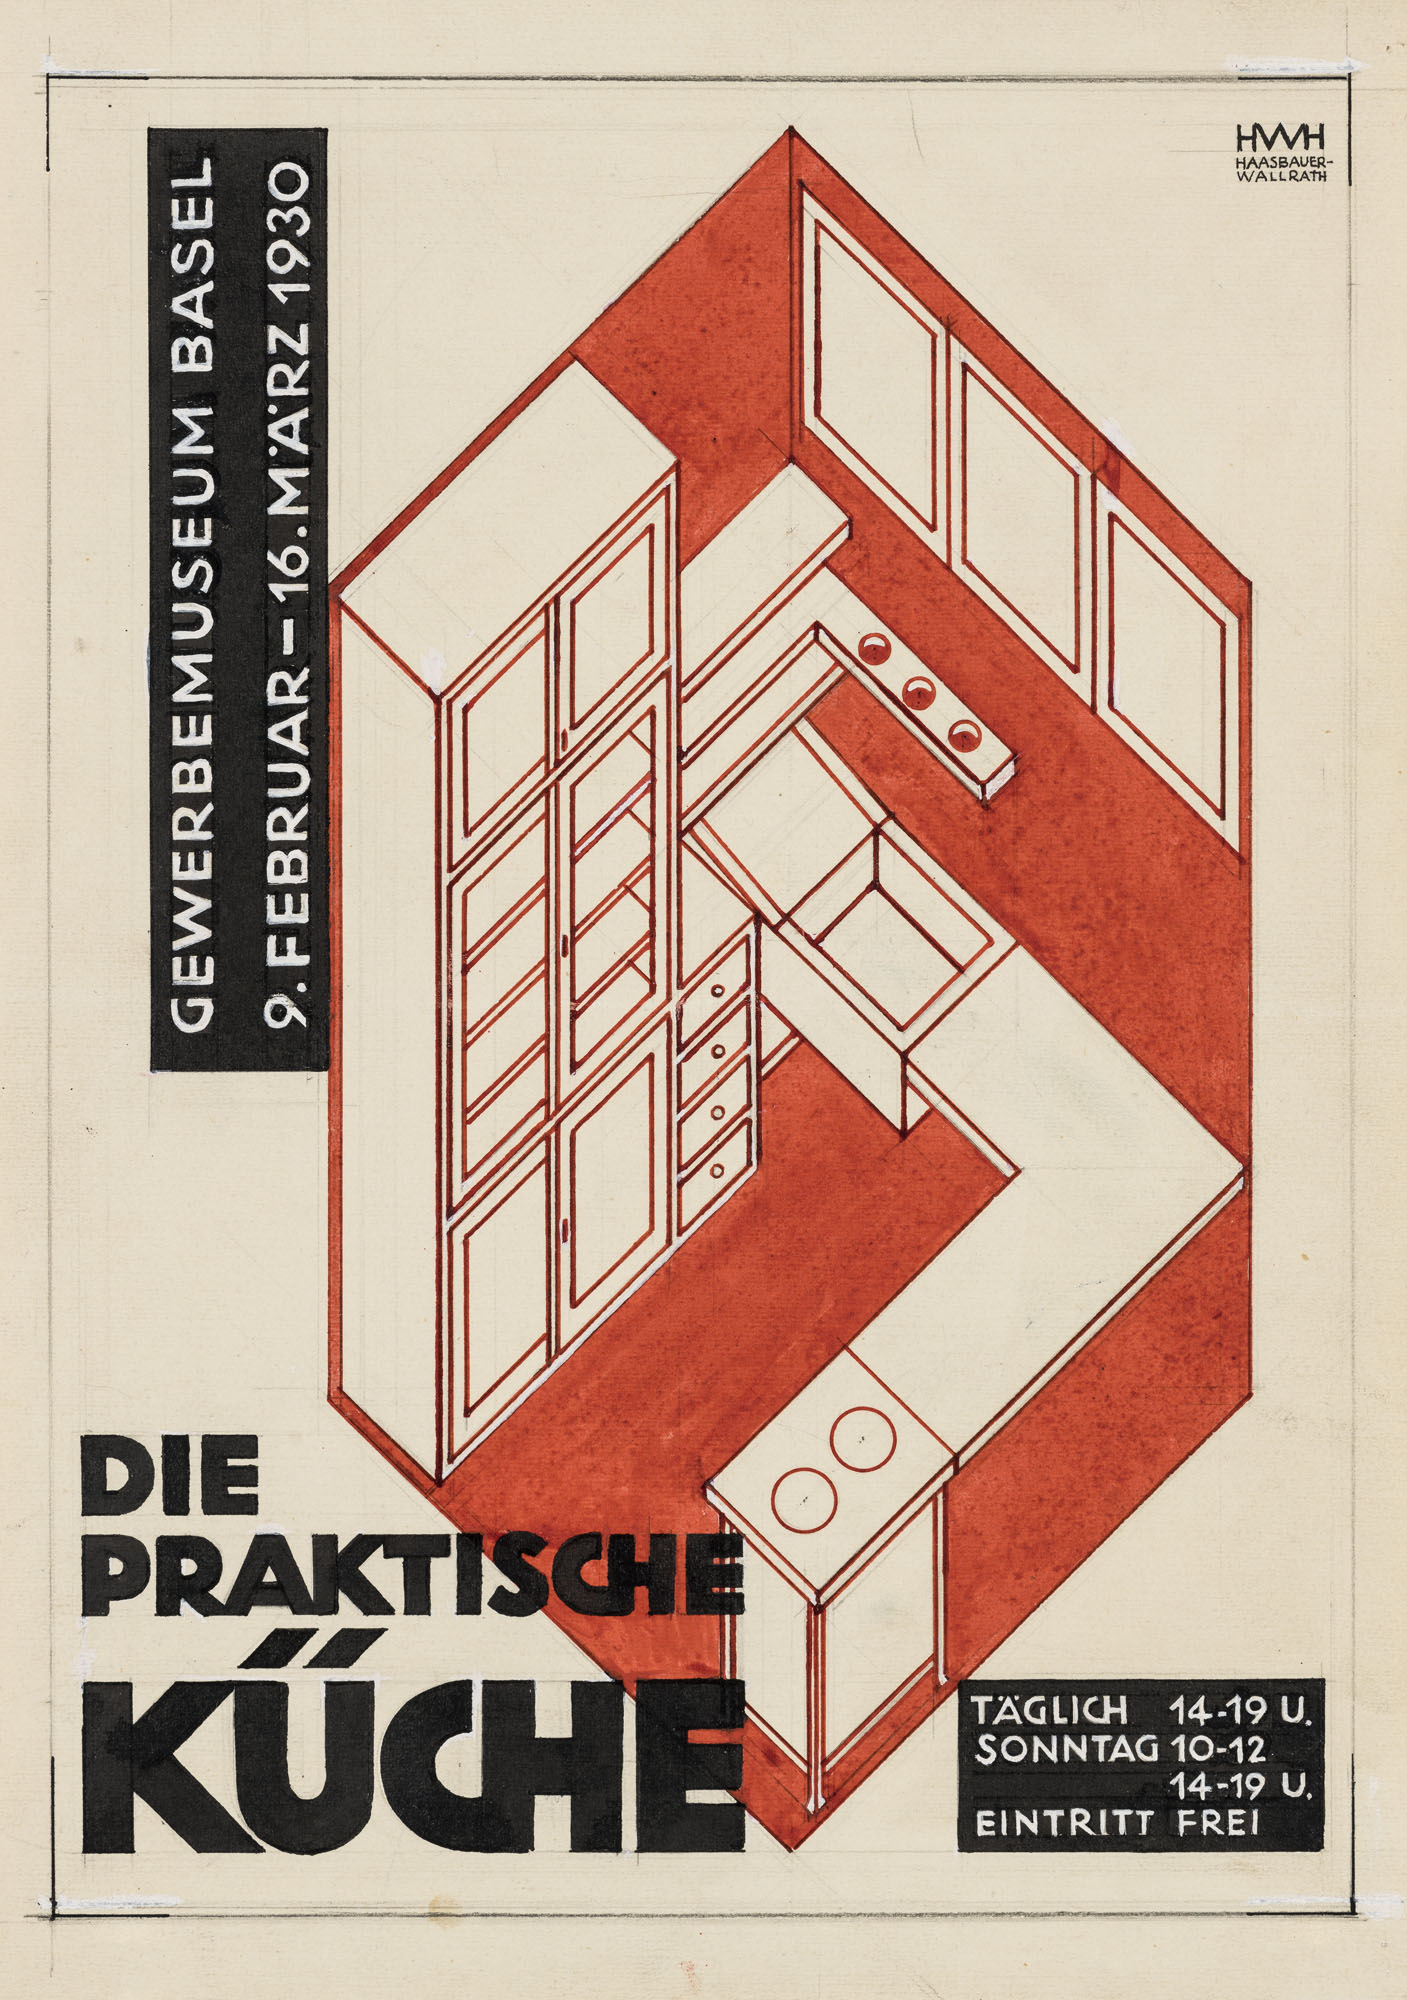 Die praktische Küche Helene Haasbauer-Wallrath Plakat